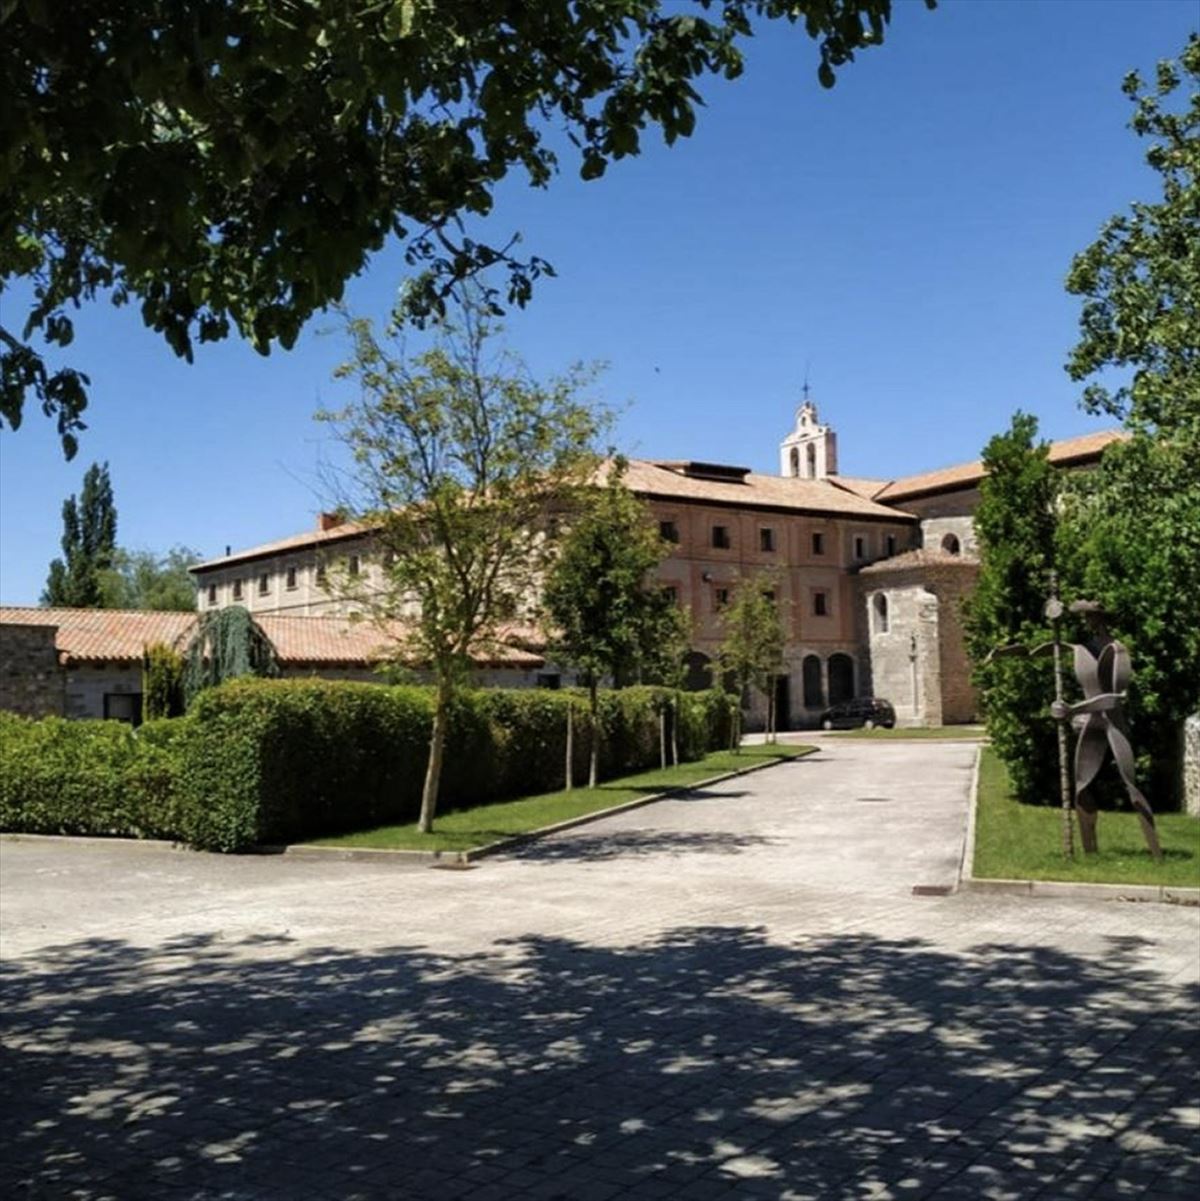 Monasterio de Belorado, en Burgos. 